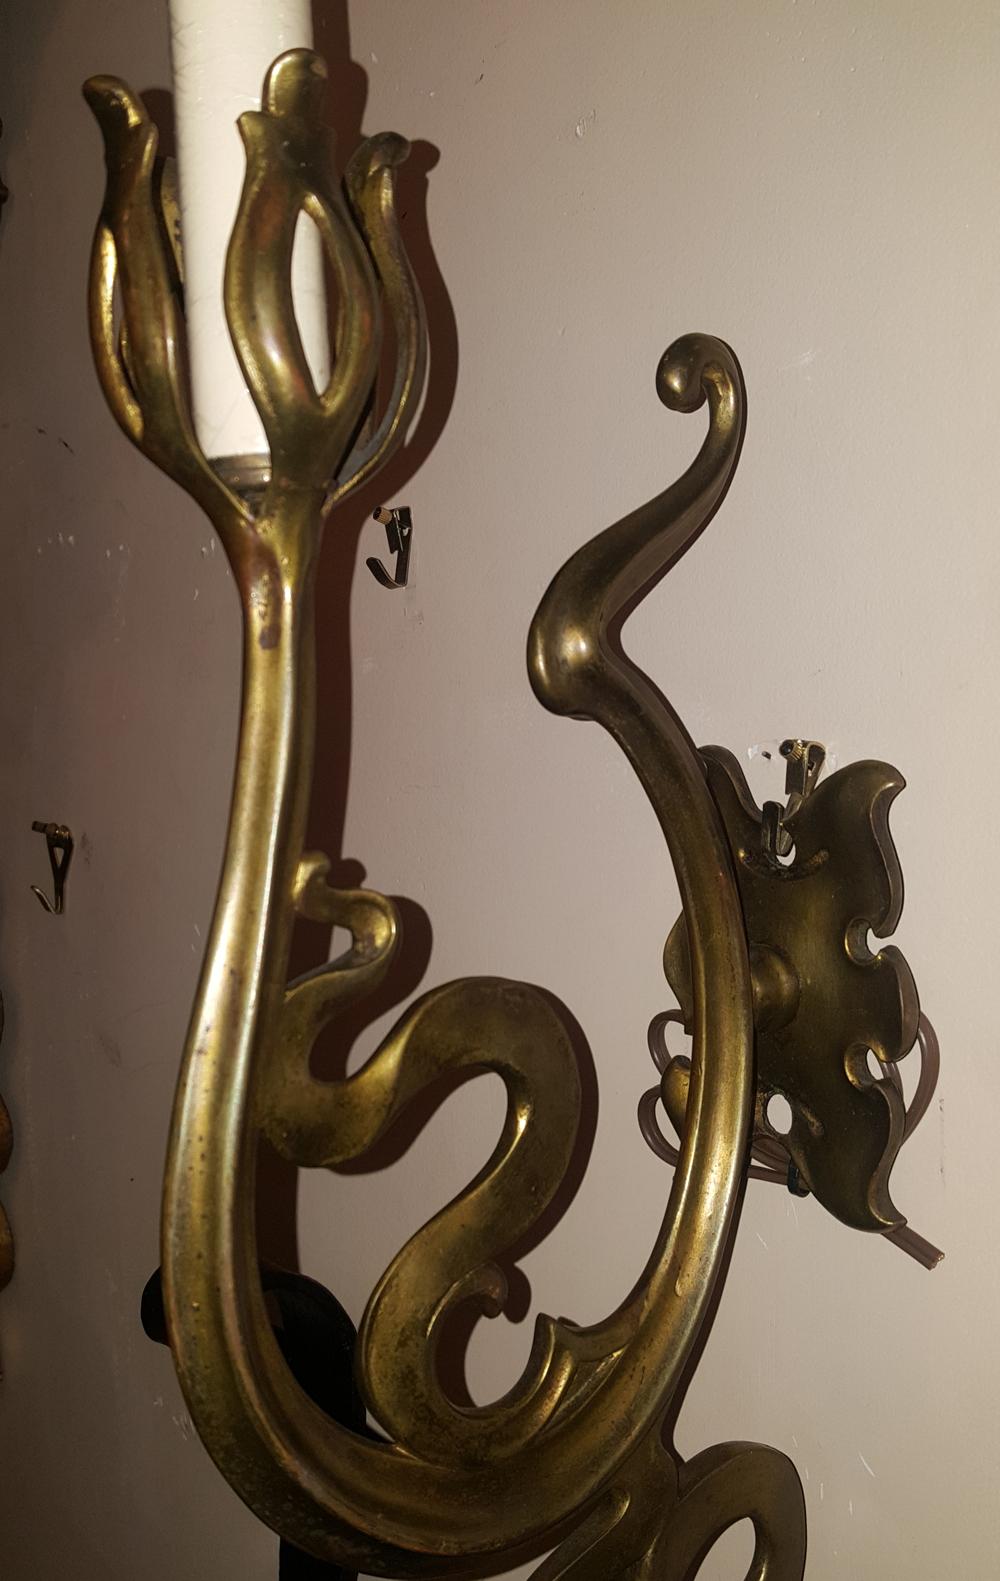 Pair of Art Nouveau bronze sconces with foliage motif. 

Measurements
Height: 17.25